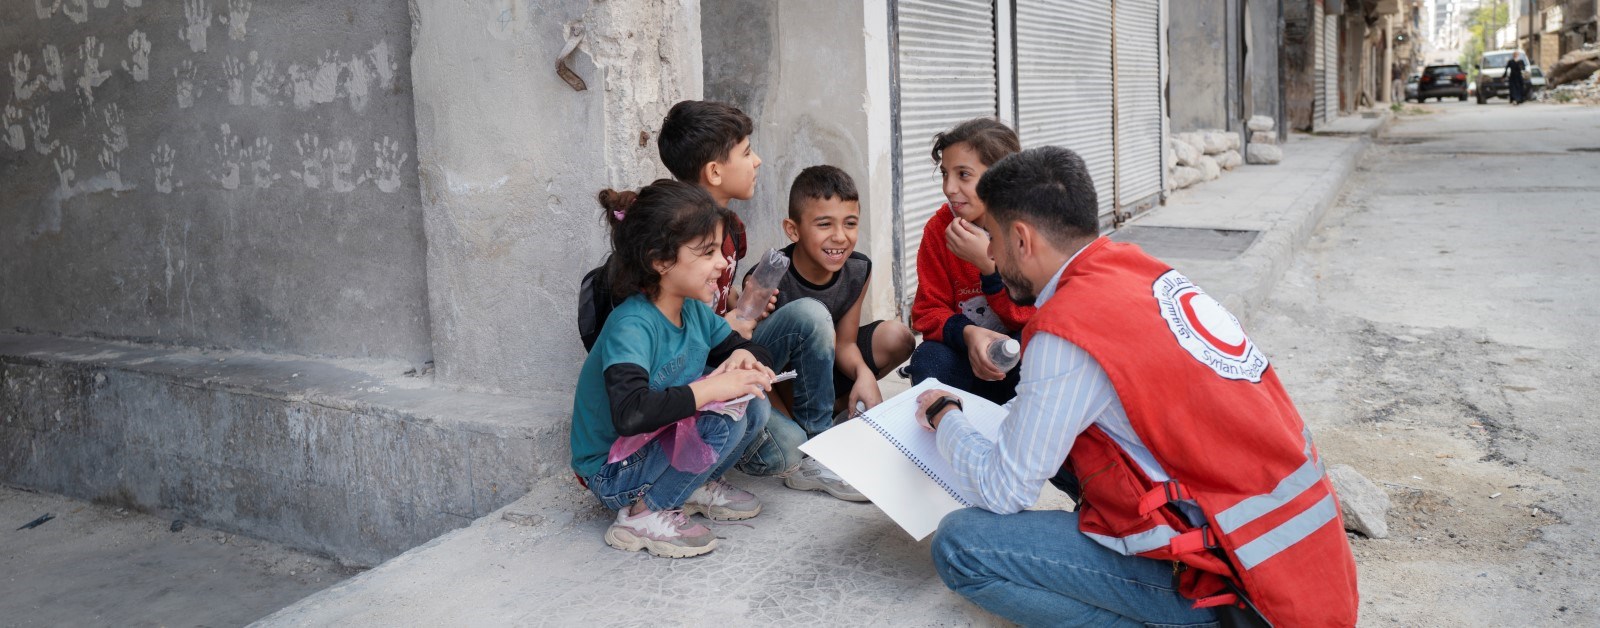 En frivillige fra Syrisk Røde Halvmåne snakker med barn som smiler og sitter på et fortau.